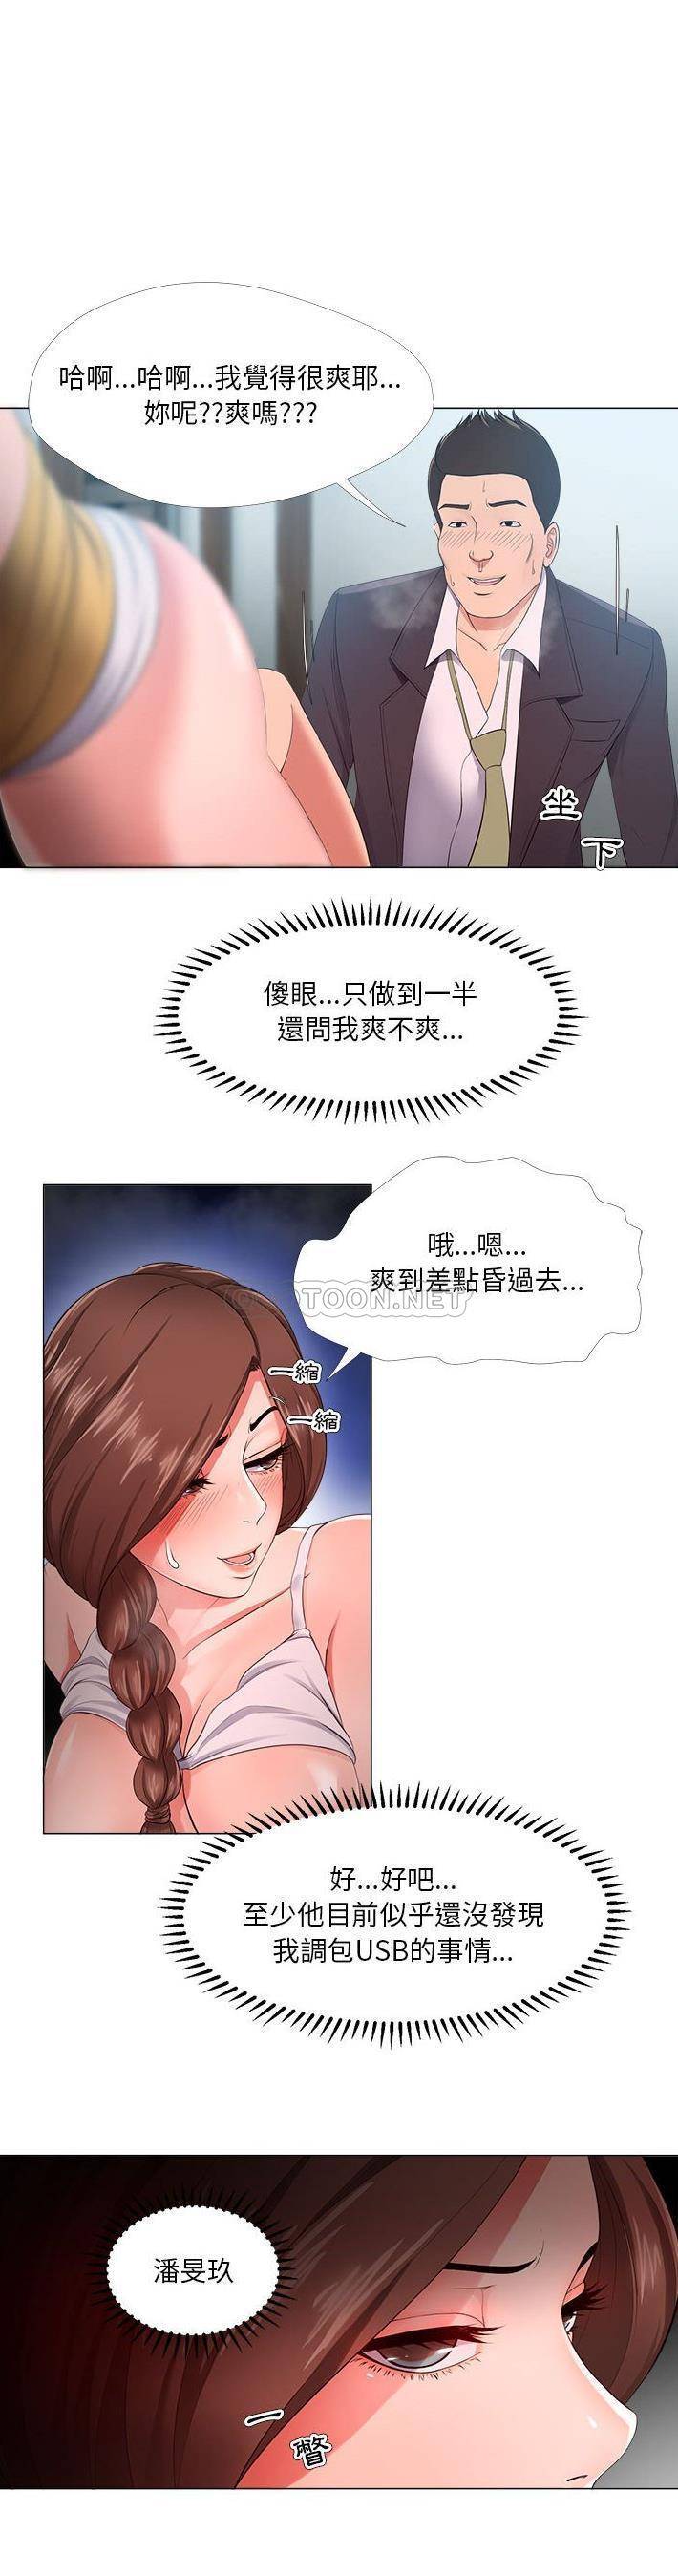 韩国污漫画 女人專門為難女人(女人的戰爭) 第25话 20